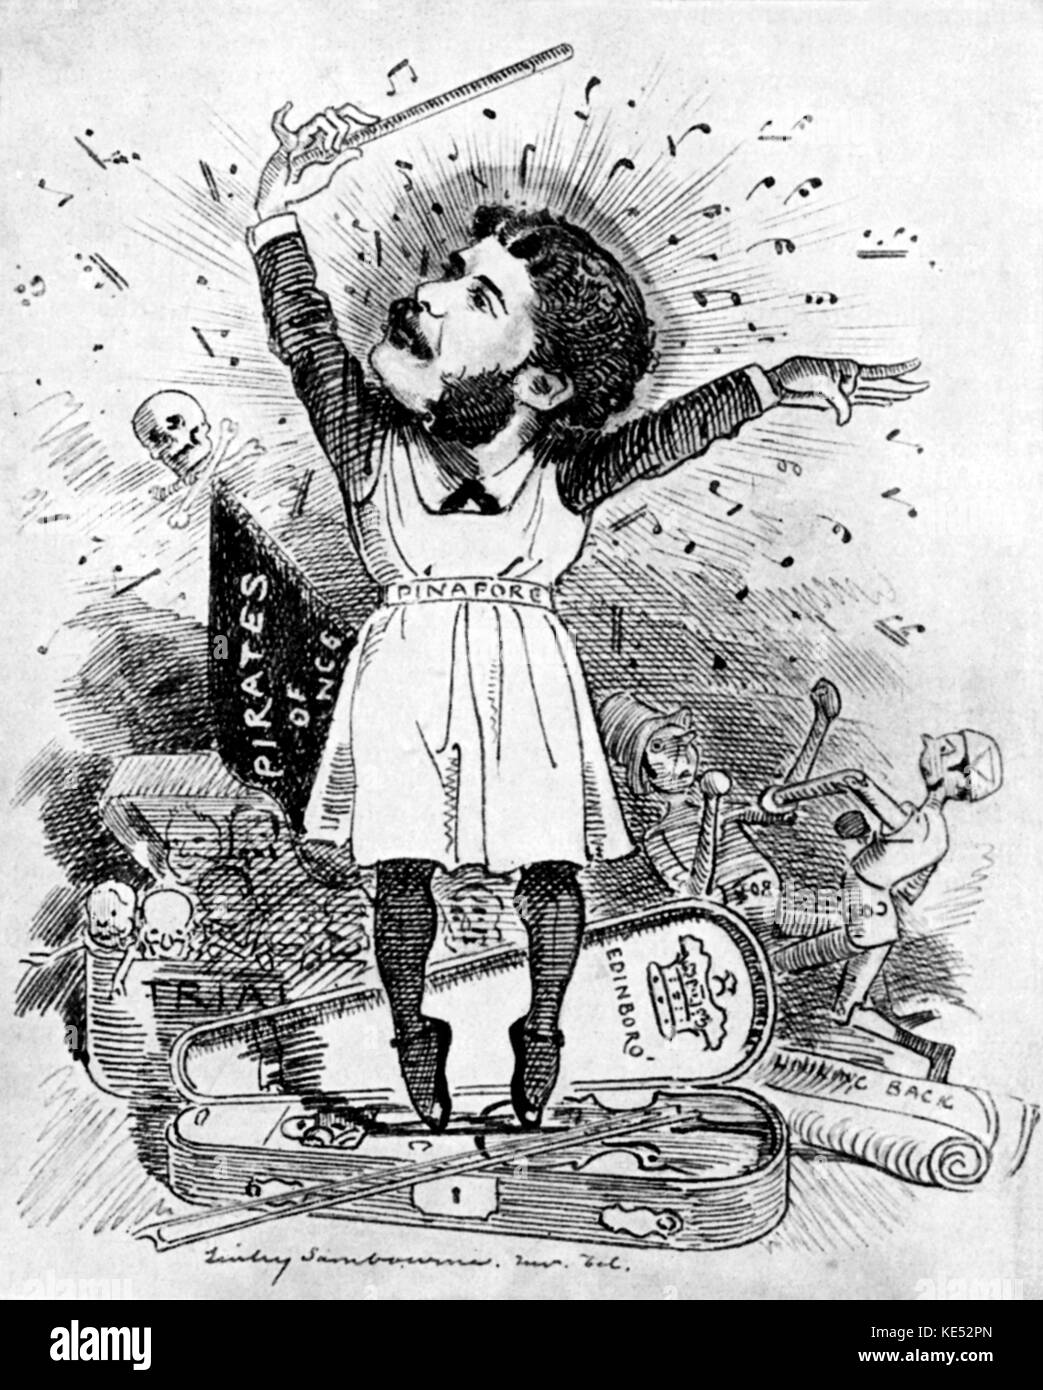 Arthur Sullivan - englische Komponist: 13. Mai 1842 - 22. November 1900. Karikatur von Linley Sambourne: Karikaturist für 'Lochen', den 4. Januar 1844 - 3. August 1910. Stockfoto